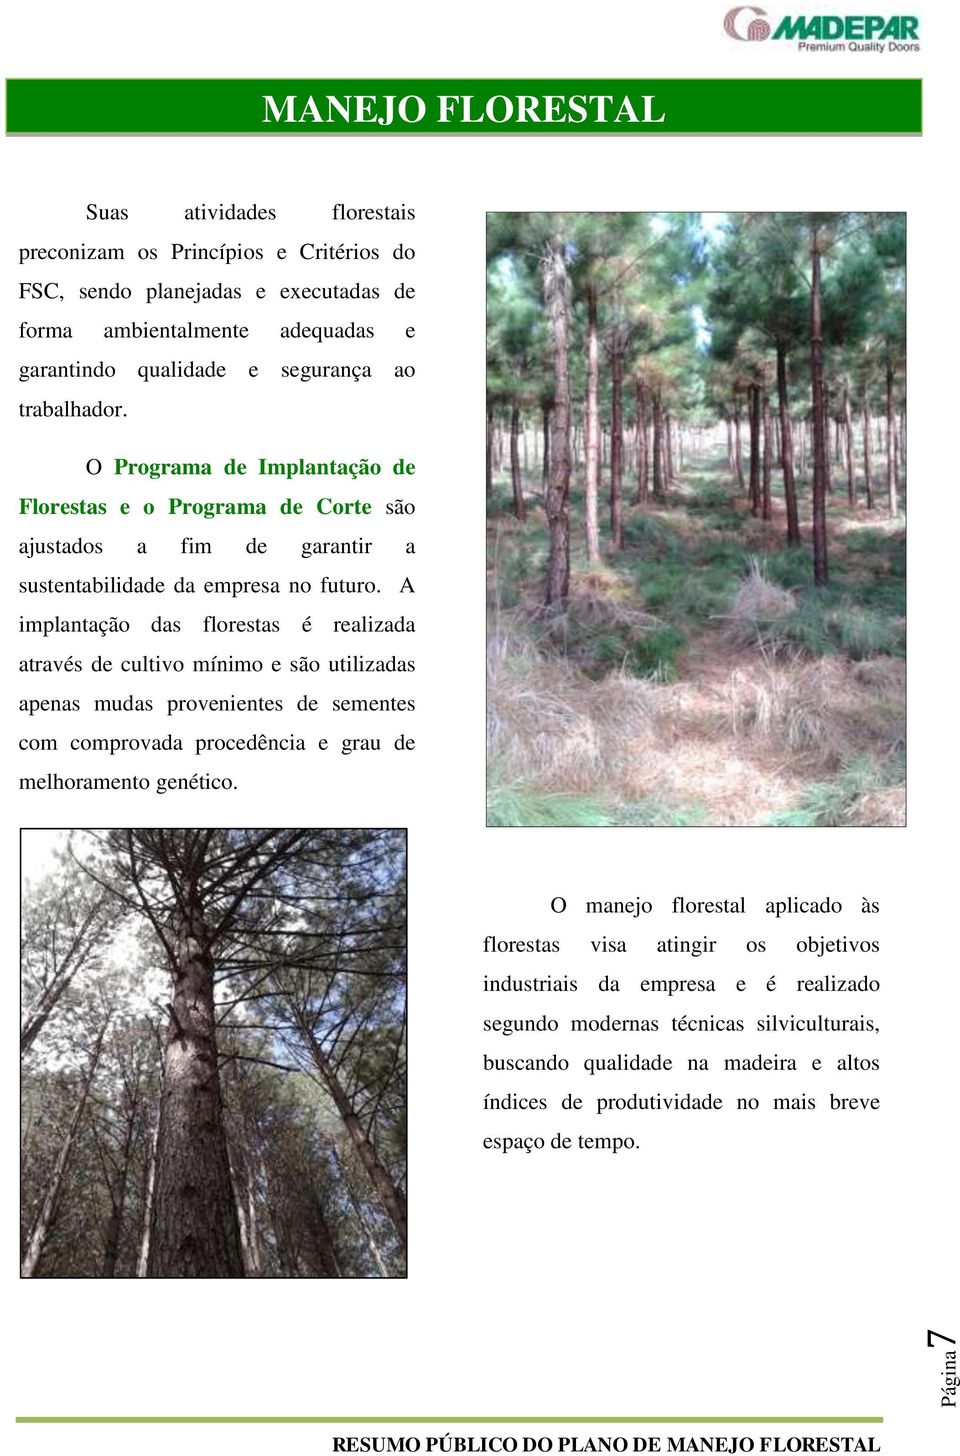 A implantação das florestas é realizada através de cultivo mínimo e são utilizadas apenas mudas provenientes de sementes com comprovada procedência e grau de melhoramento genético.